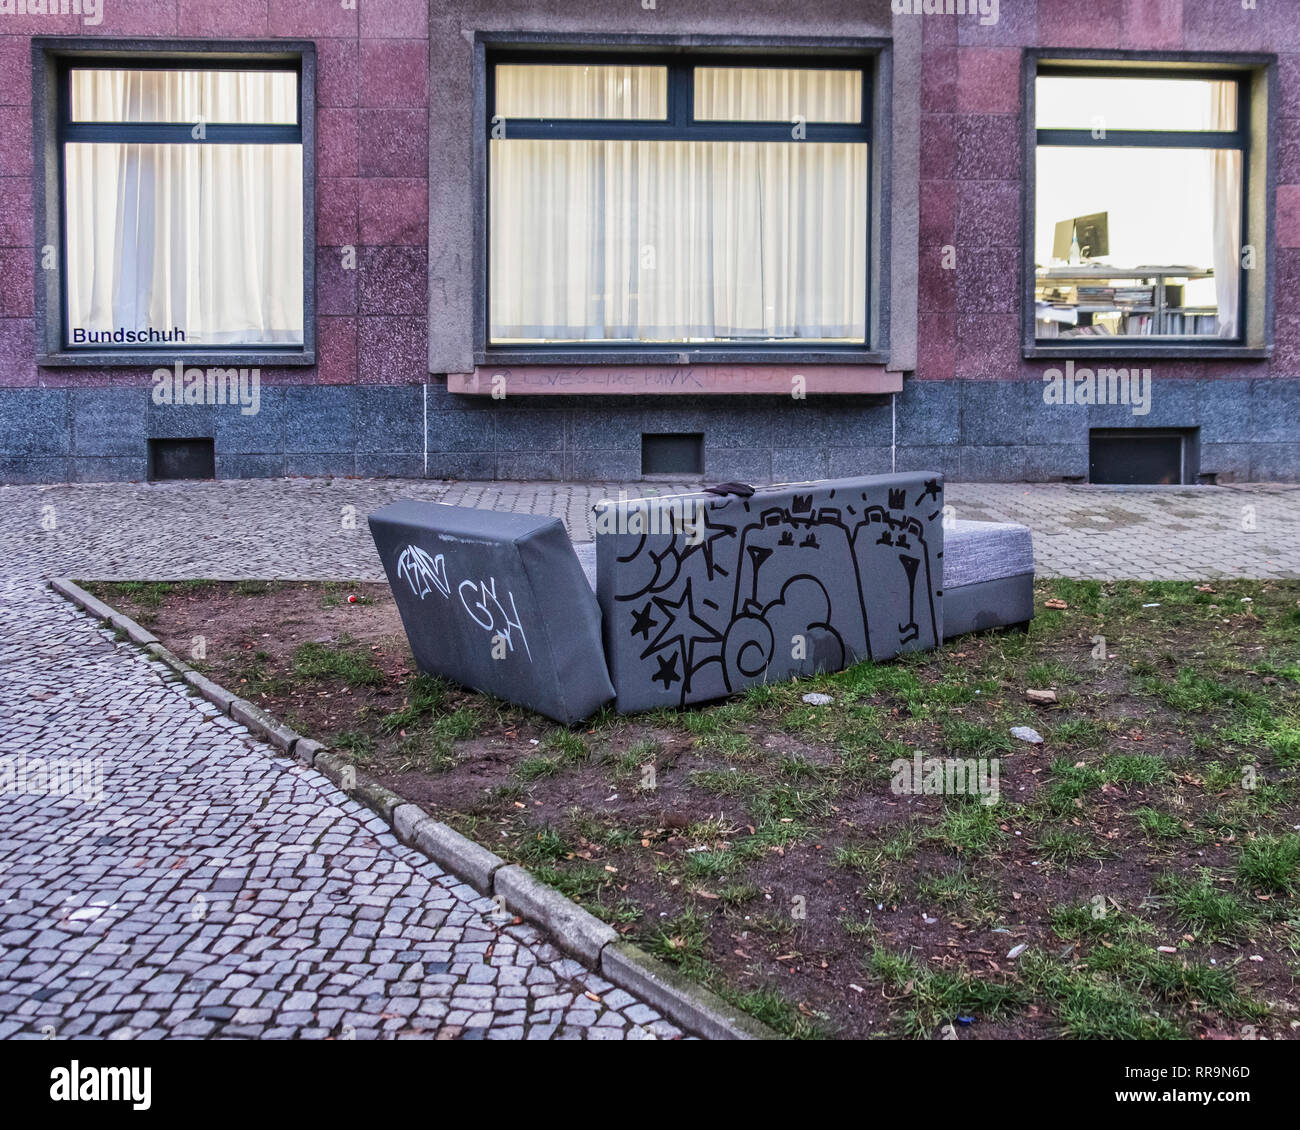 Berlin, Mitte. Die Gedumpten aufgegeben Sofa auf Stadt Pflaster mit  Zeichnung von street artist, Buder. Papierkorb Kunst wird bald verschwunden  sein Stockfotografie - Alamy